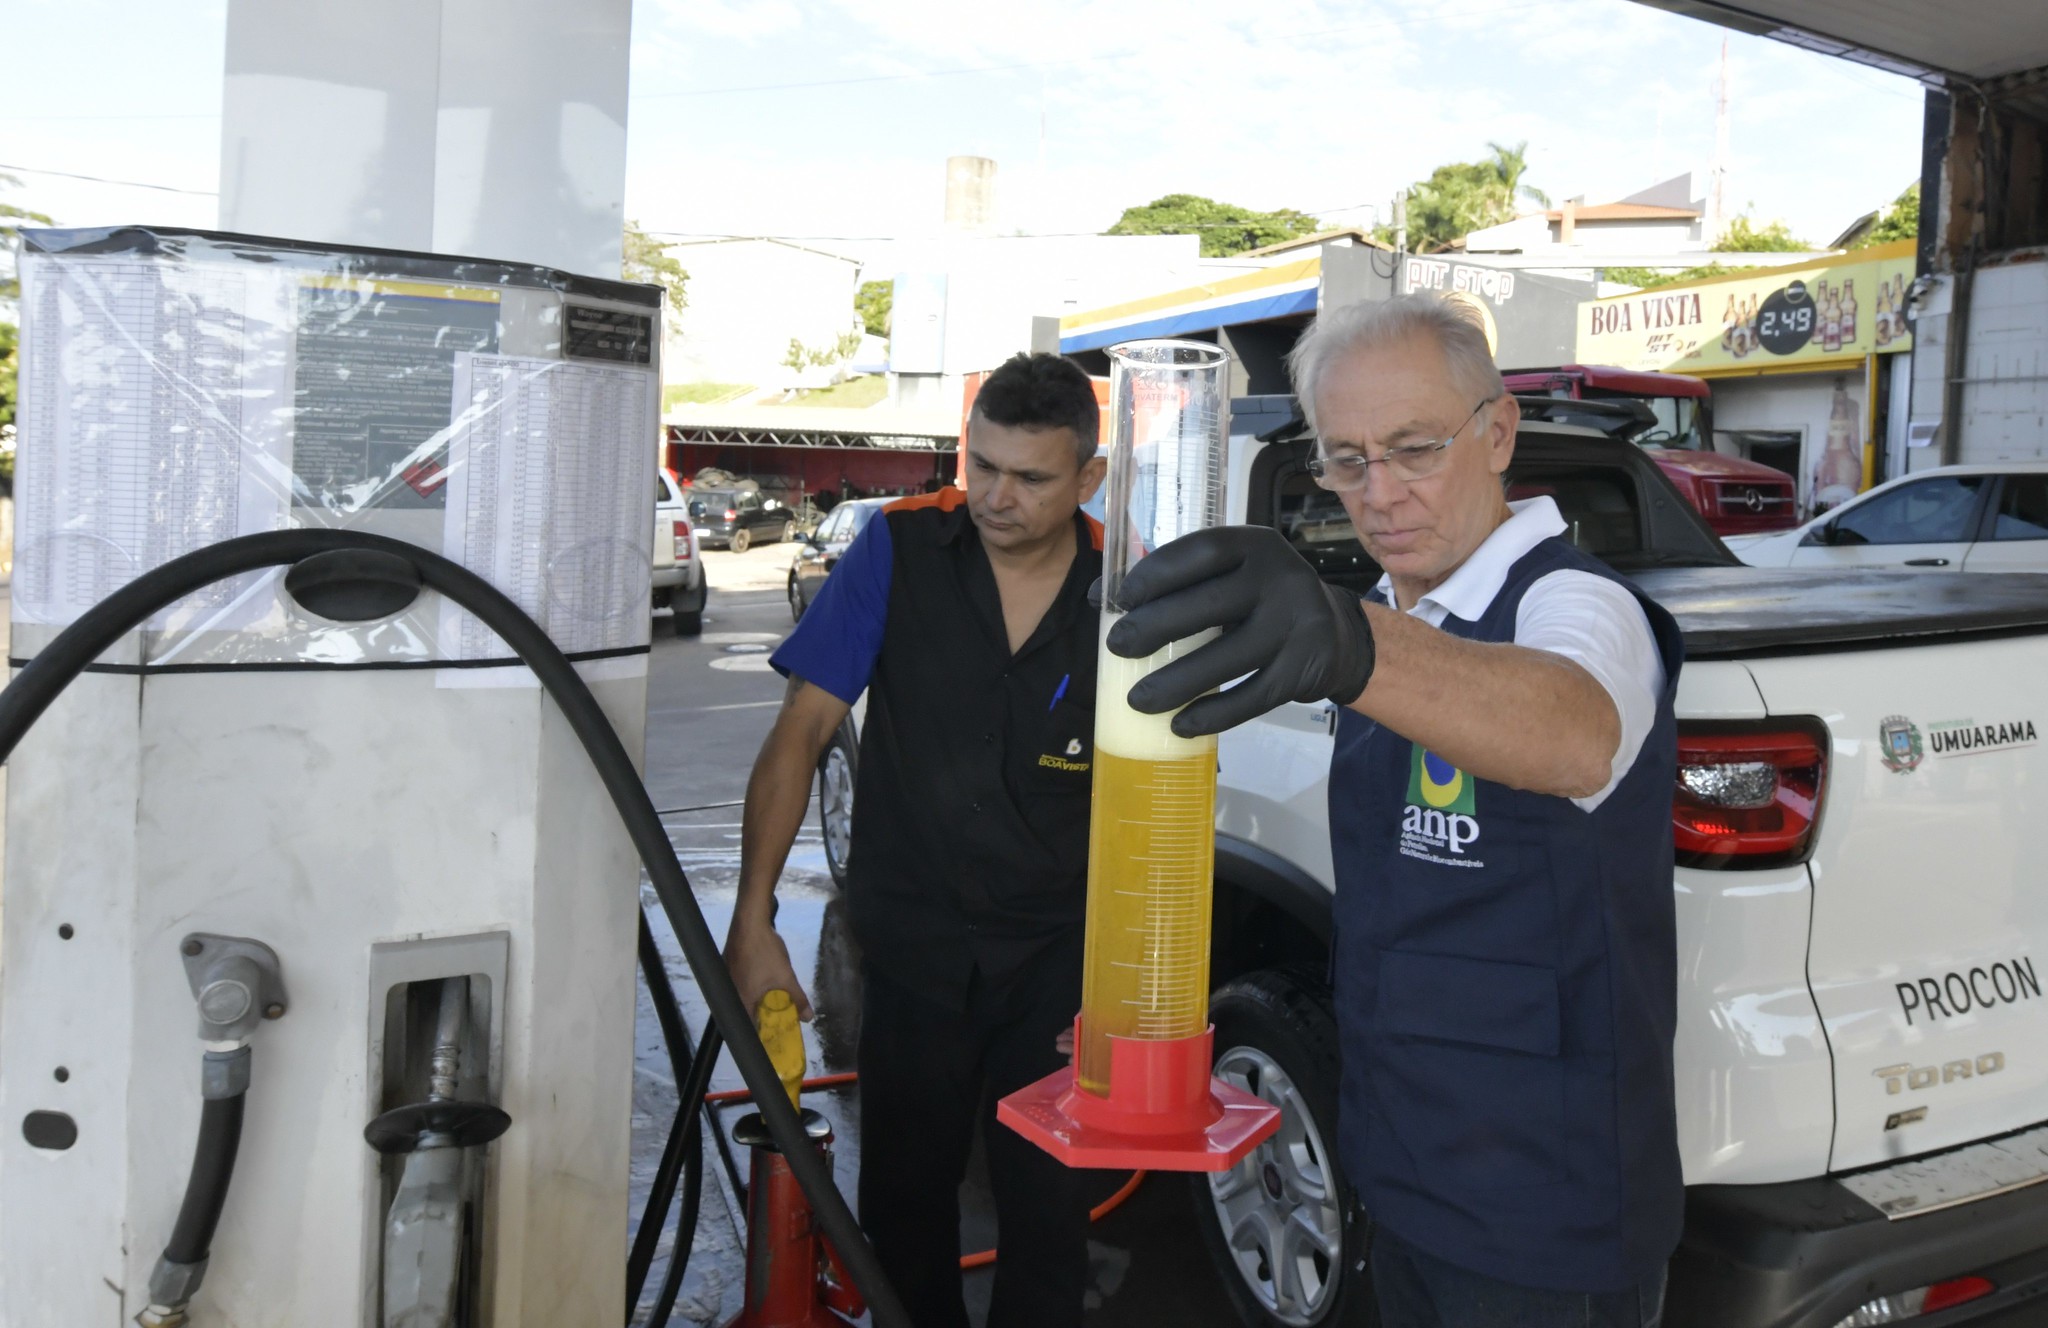 Agência Nacional de Petróleo realiza fiscalização em três postos de combustíveis de Umuarama